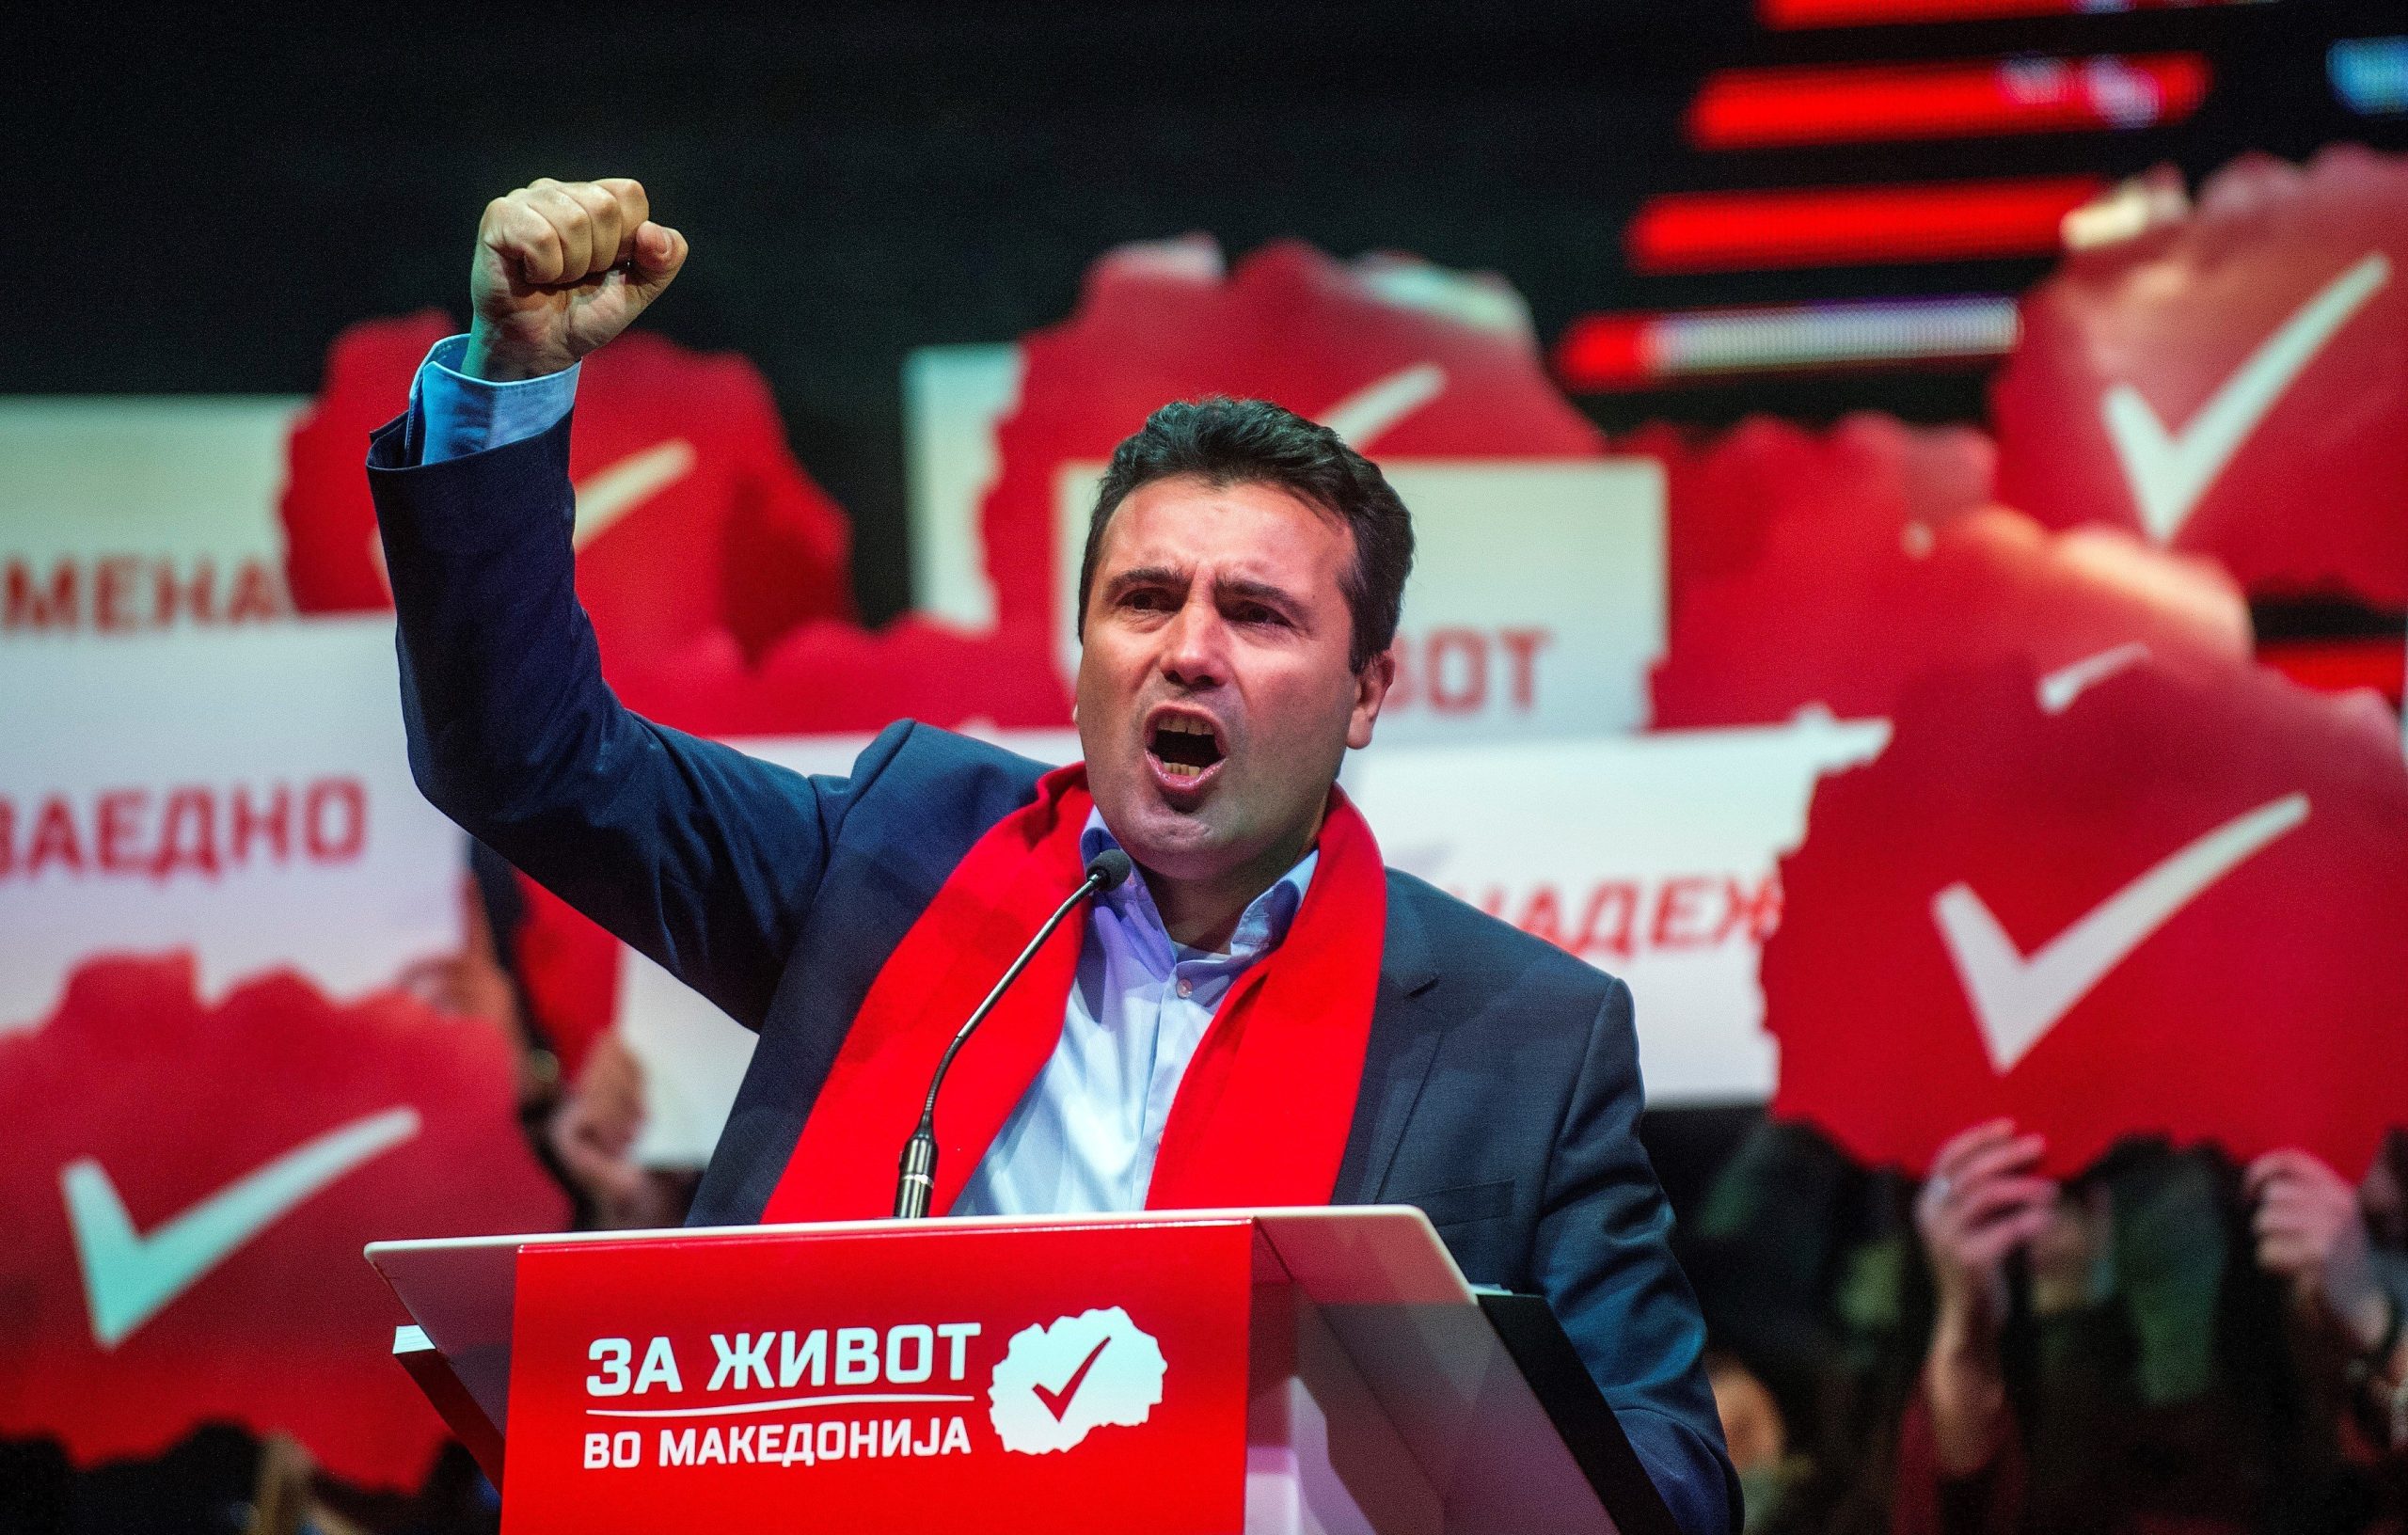 ΠΓΔΜ: Η νέα κυβέρνηση Ζ. Ζάεφ παραμερίζει τη «ψευδο-μακεδονική» παράνοια των χρόνων… Γκρουέφσκι